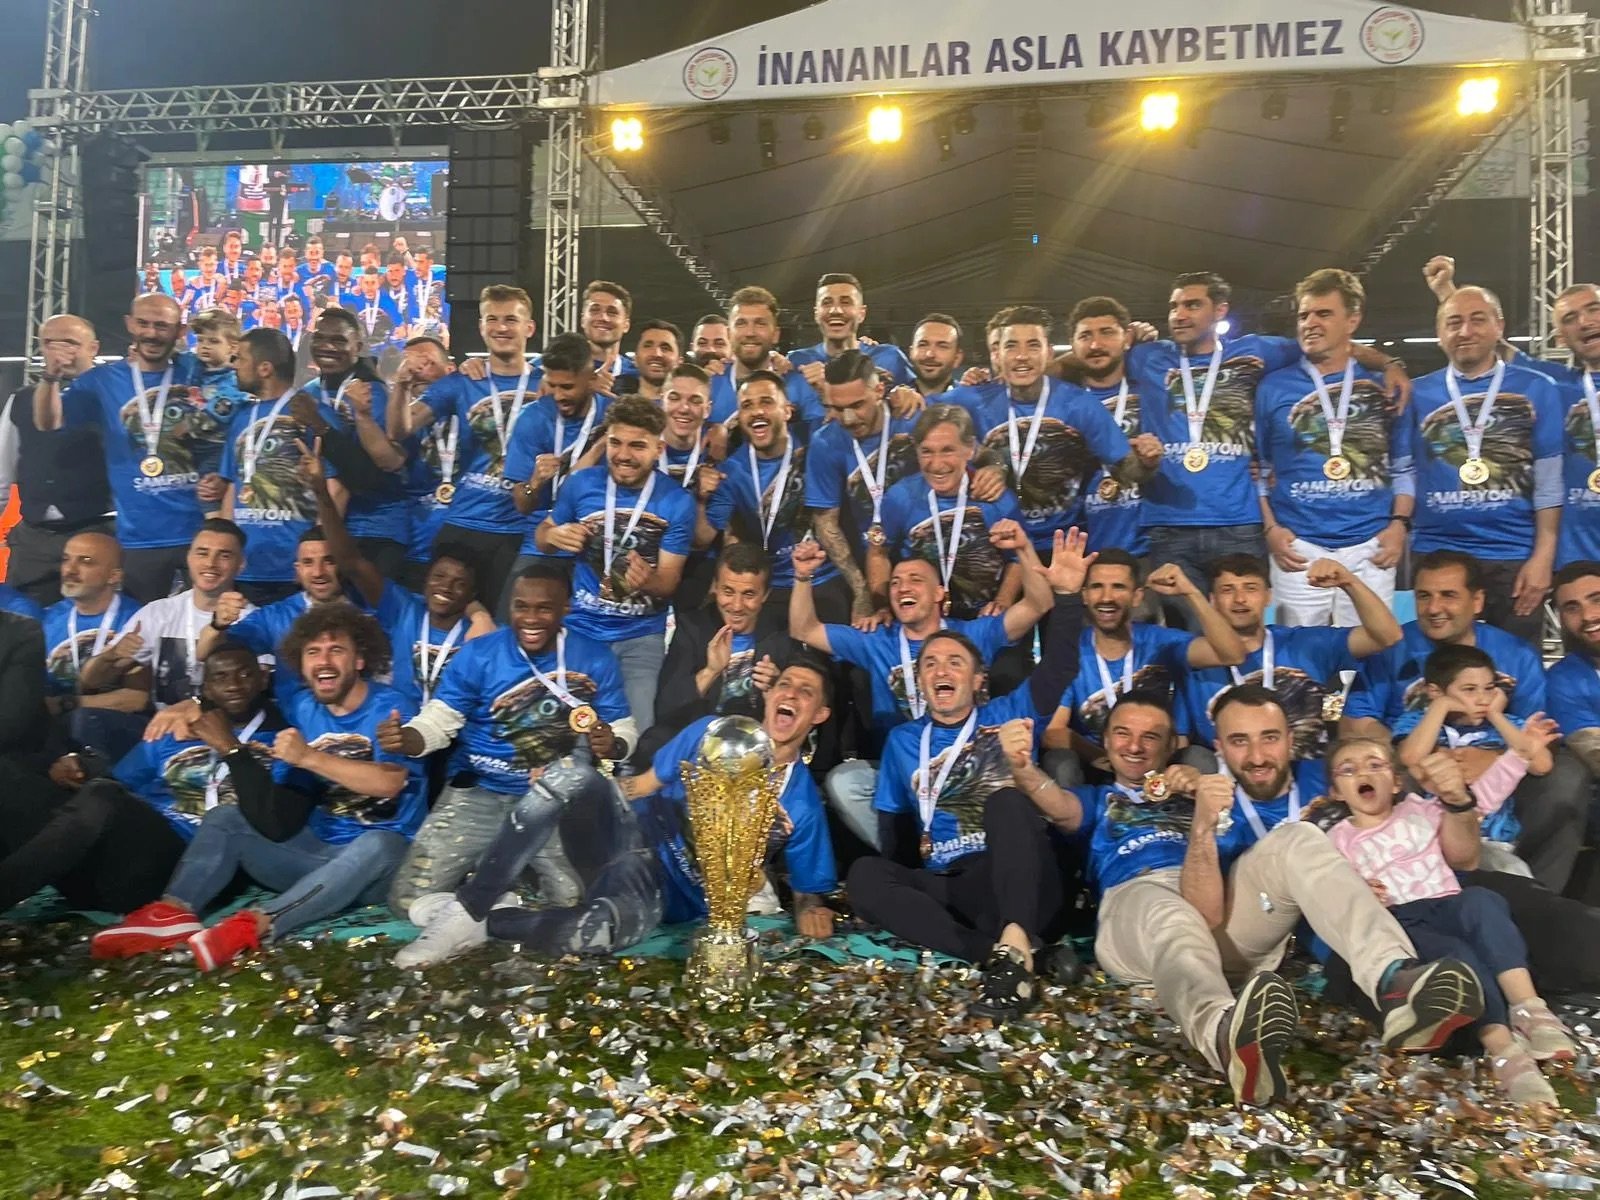 Rizespor ‘Süper Lig’e Merhaba’ töreni ile kupasını aldı